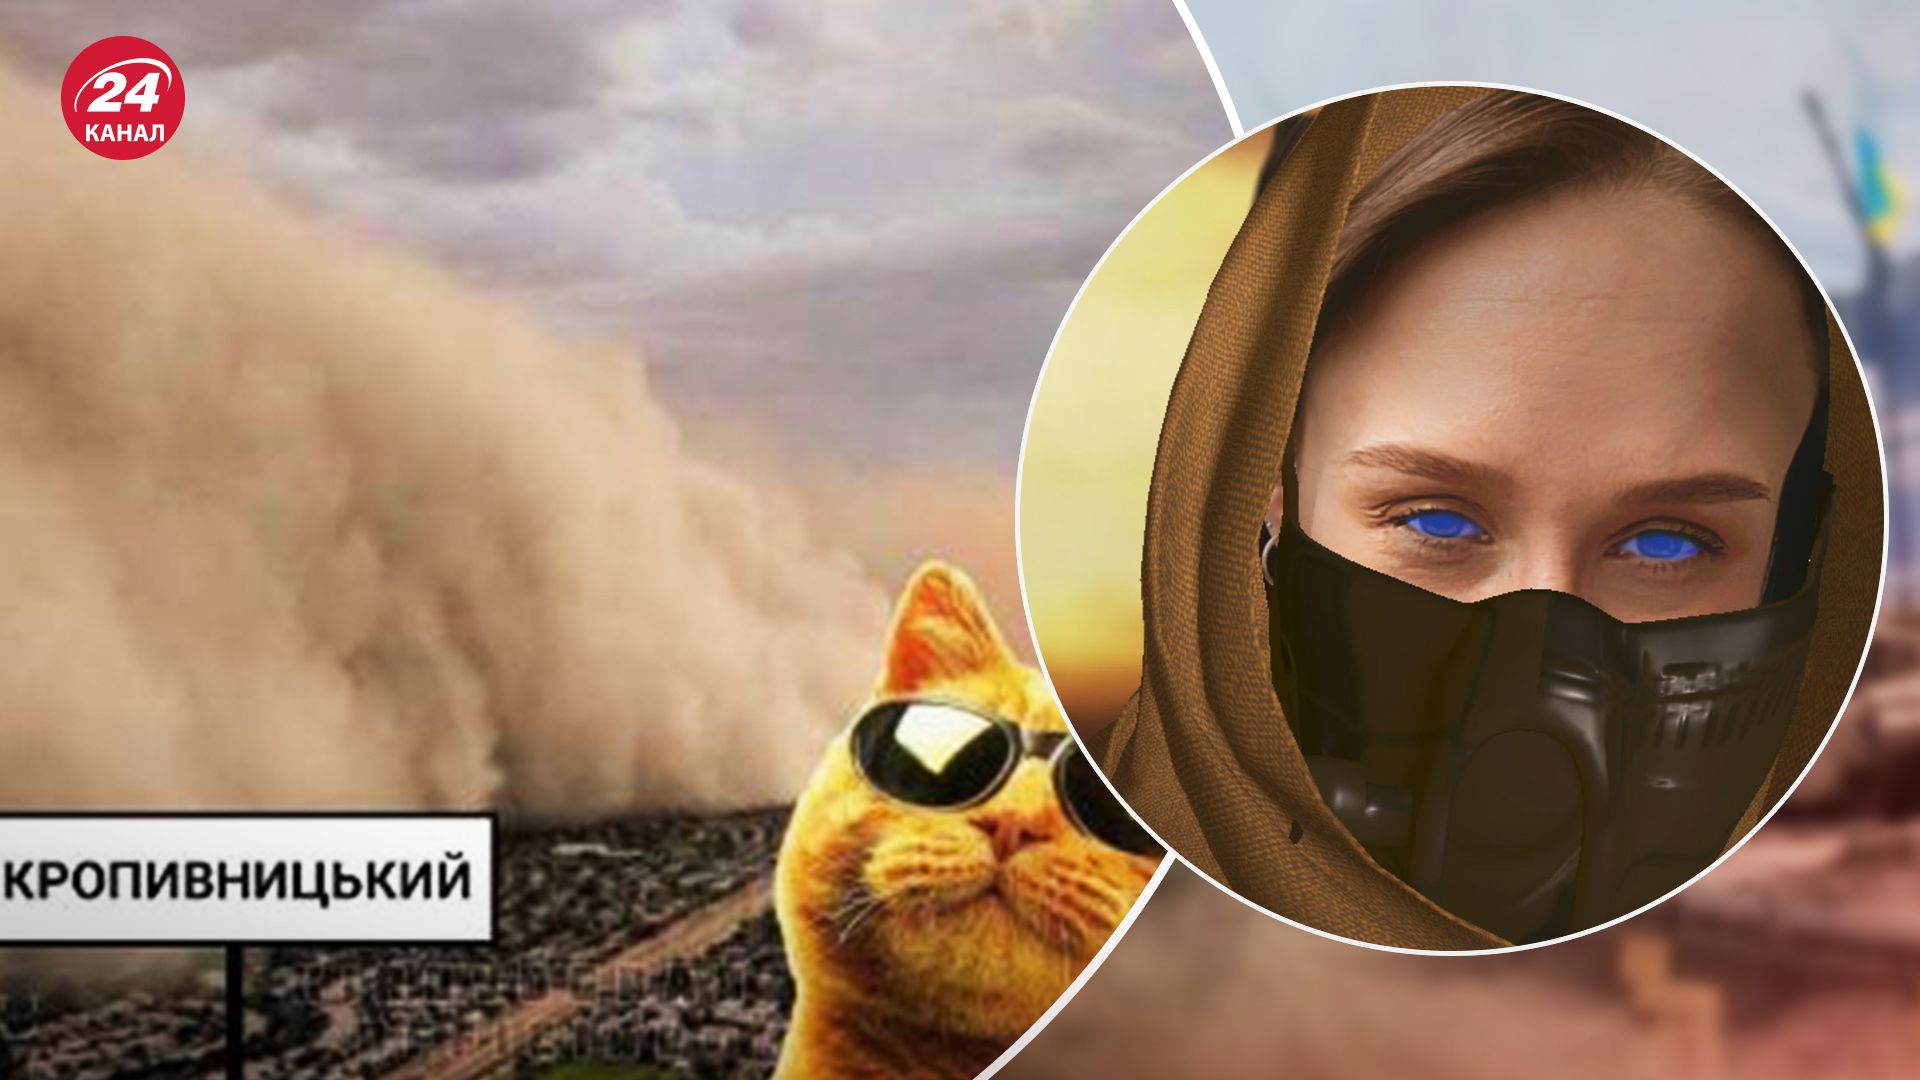 Соцсети взорвались мемами о пыли из Сахары